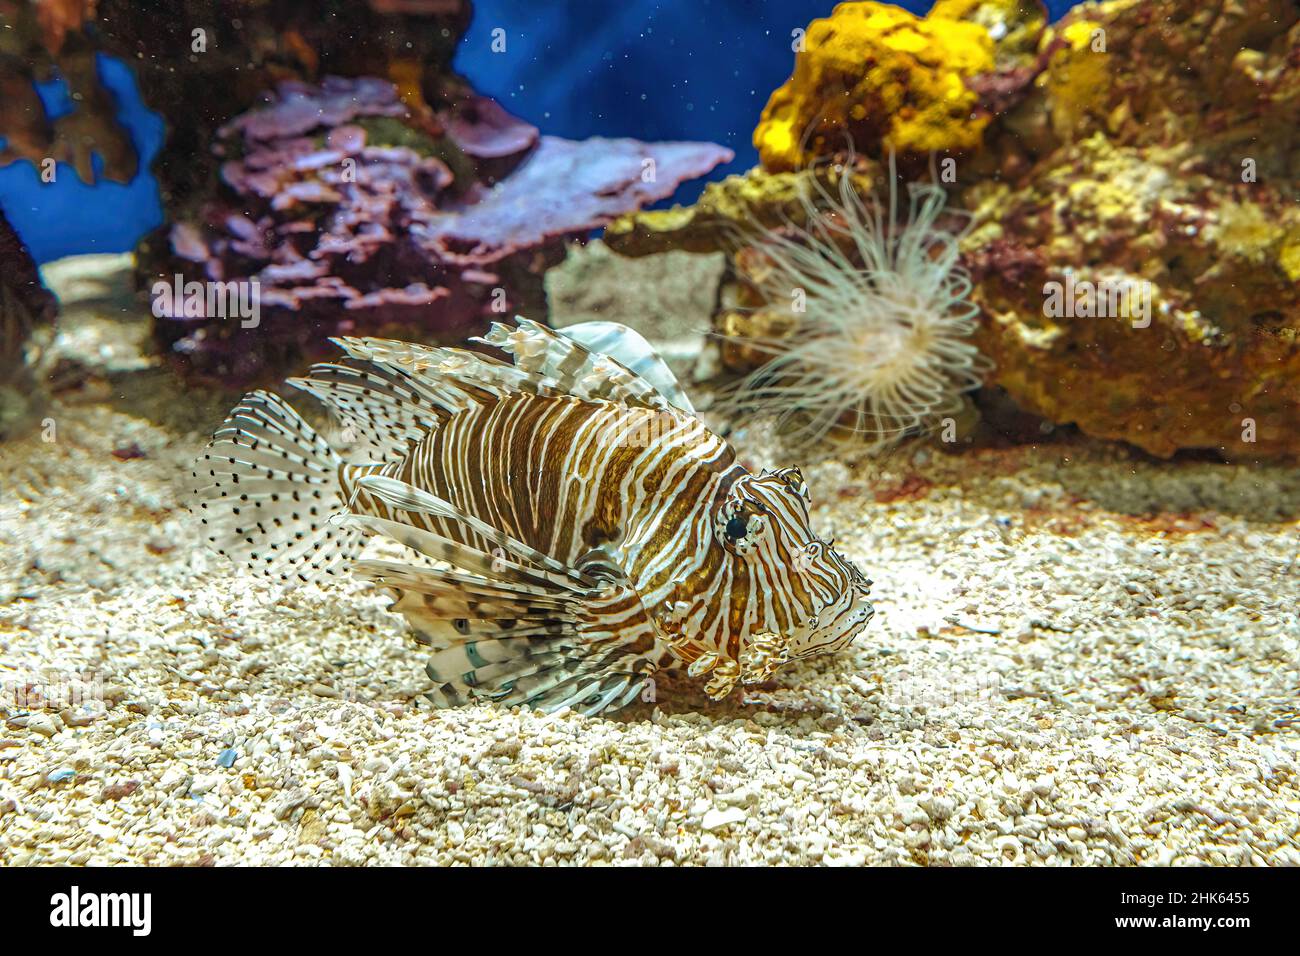 Nahaufnahme eines Lionfisches Aquarium mit giftigen Flossen in Korallentiefe. Giftige Raubfische der Pterois Miles-Arten, die im Indo-Pazifik und in der Region beheimatet sind Stockfoto